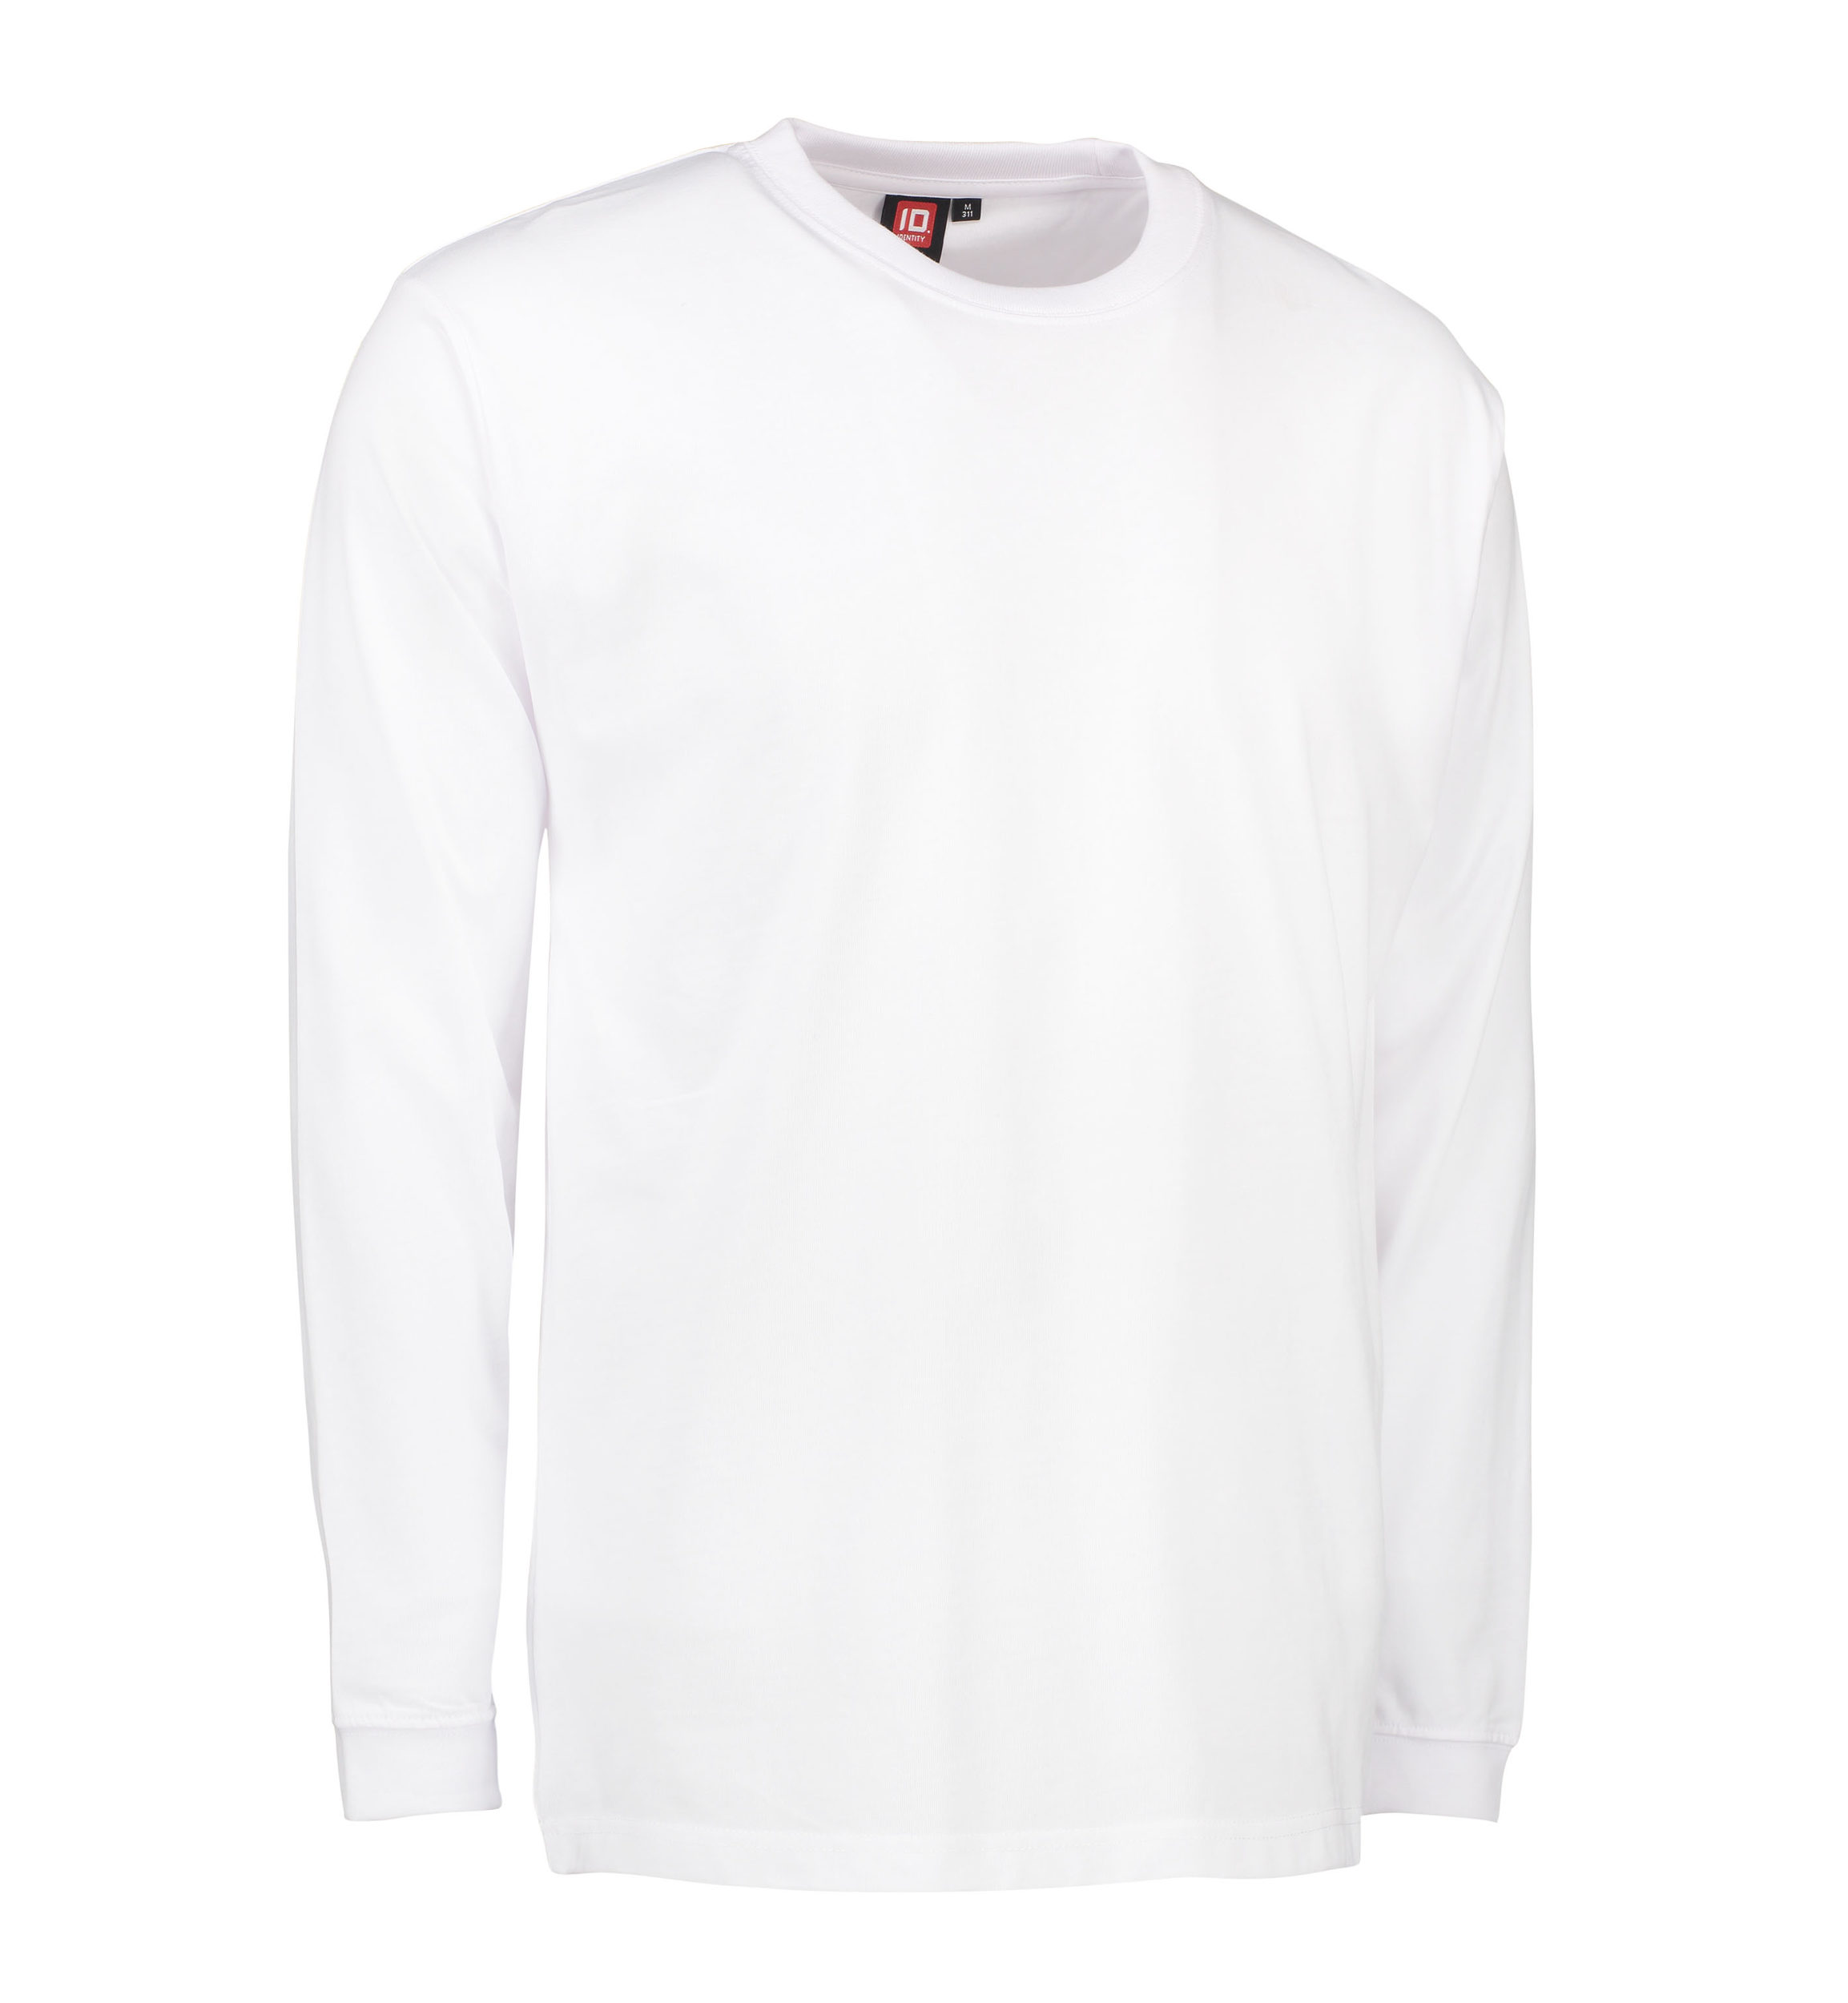 Billede af Slidstærk langærmet t-shirt til mænd i hvid - 2XL hos Sygeplejebutikken.dk